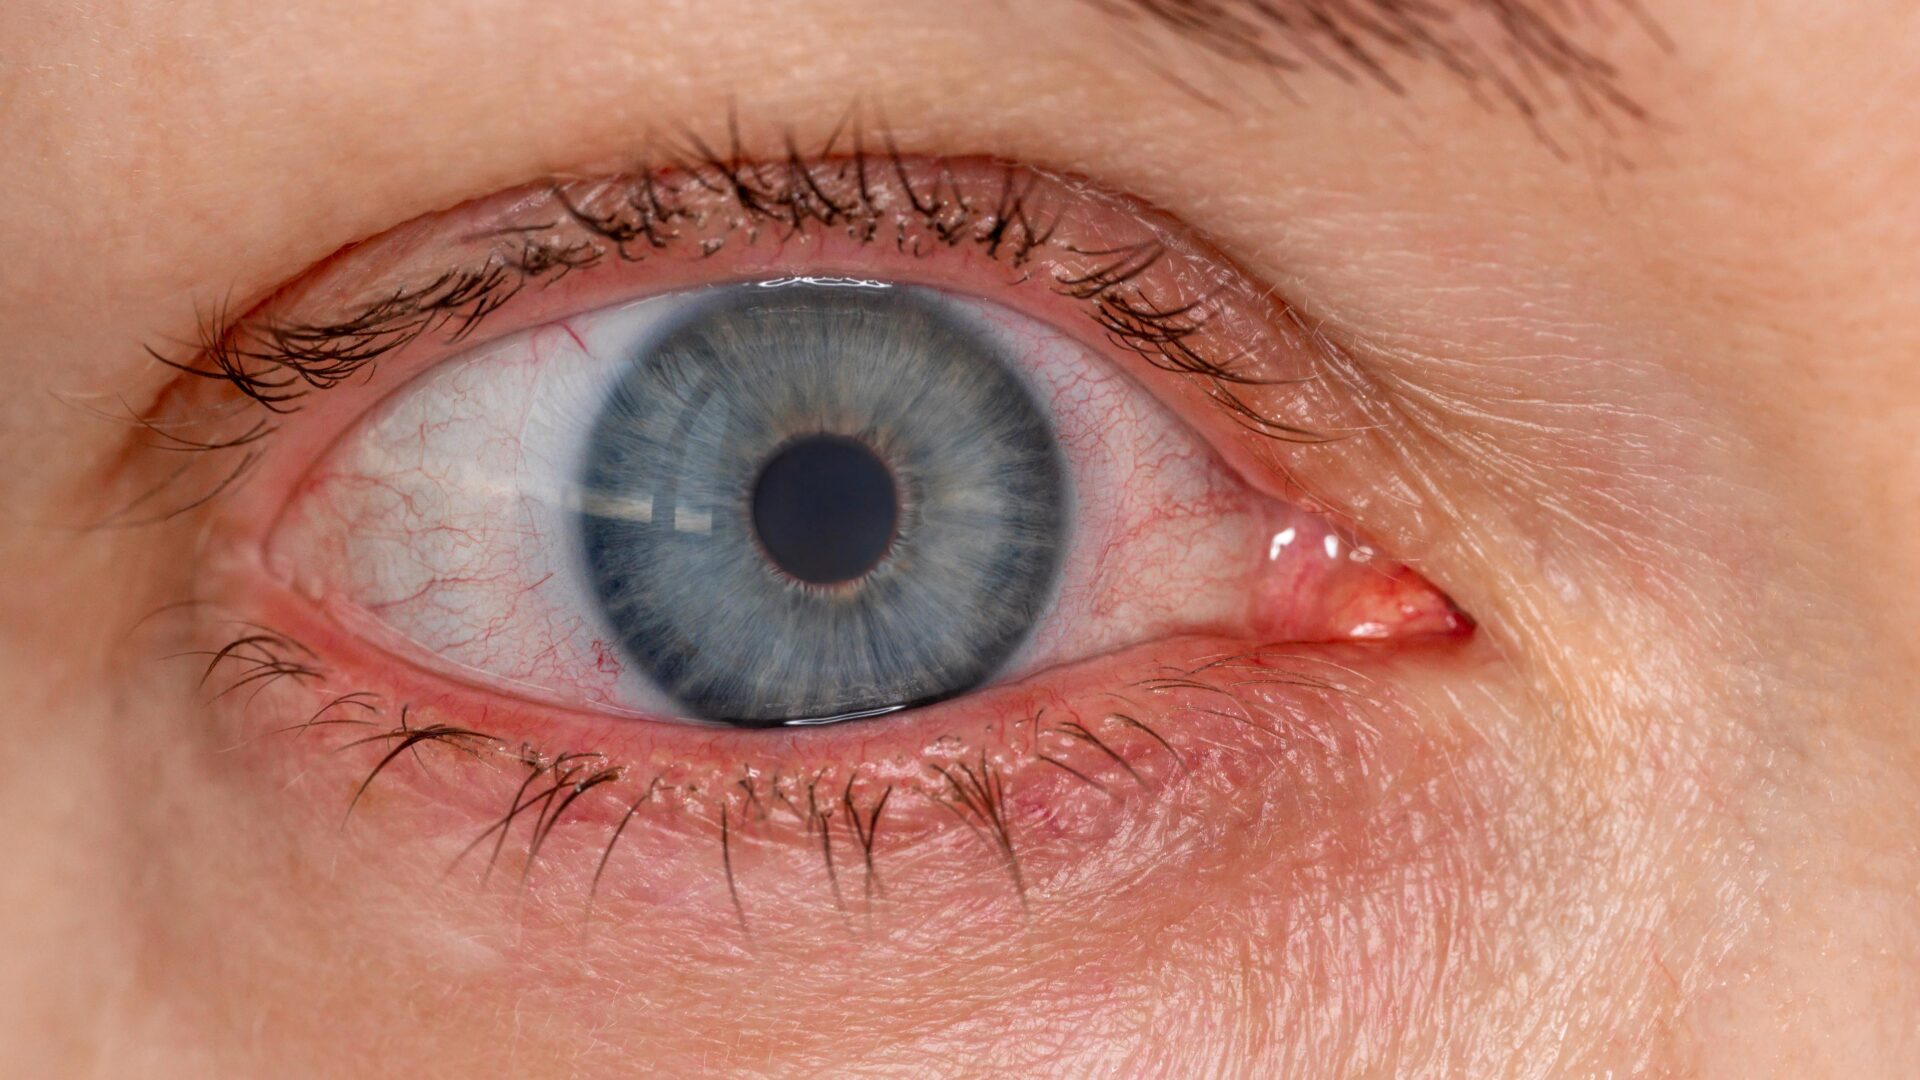 Suuri riskiryhmä mikrobeista aiheutuviin silmäinfektioihin ovat terveet, nuoret piilolinssinkäyttäjät.